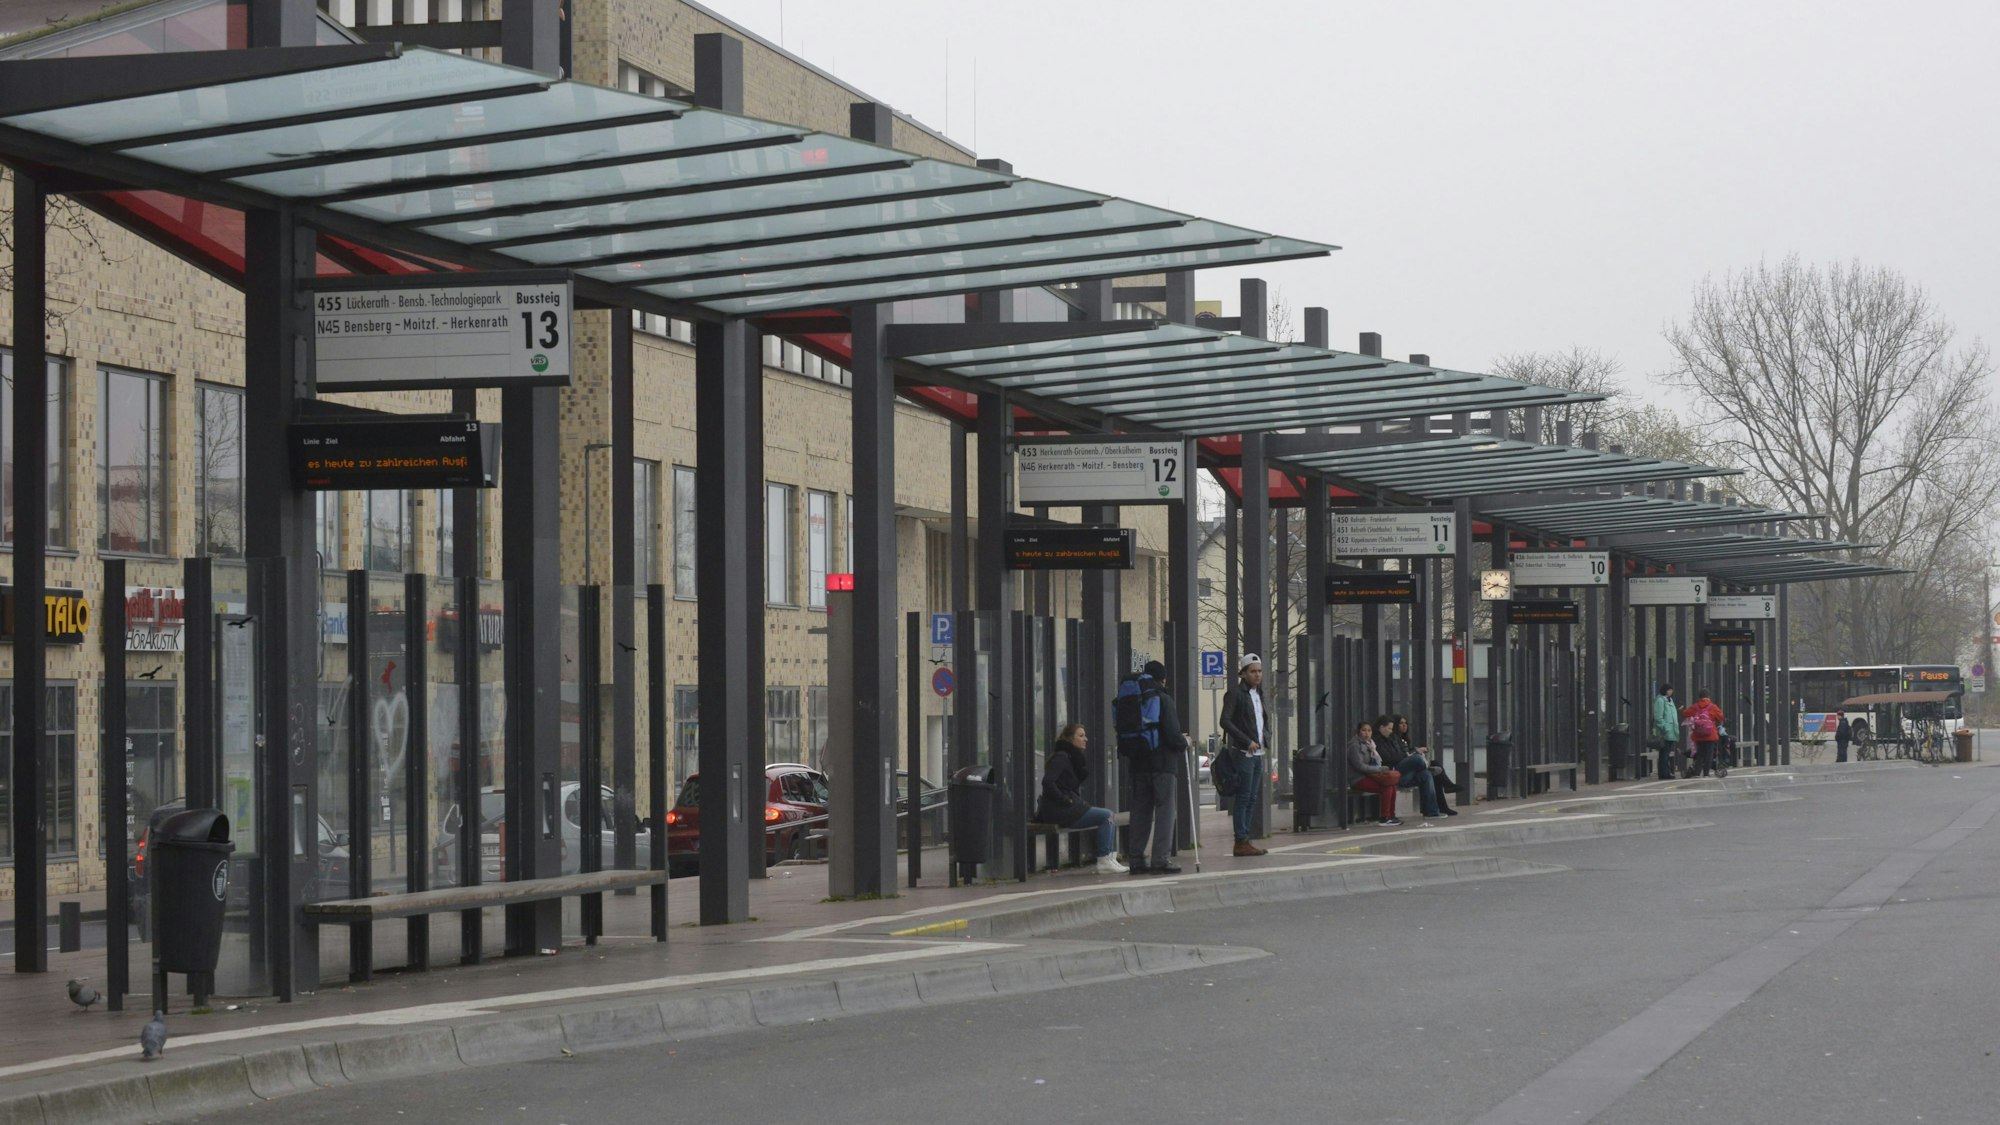 Am Gladbacher Busbahnhof warten einige Fahrgäste, im Hintergrund ist lediglich ein Bus zu sehen.